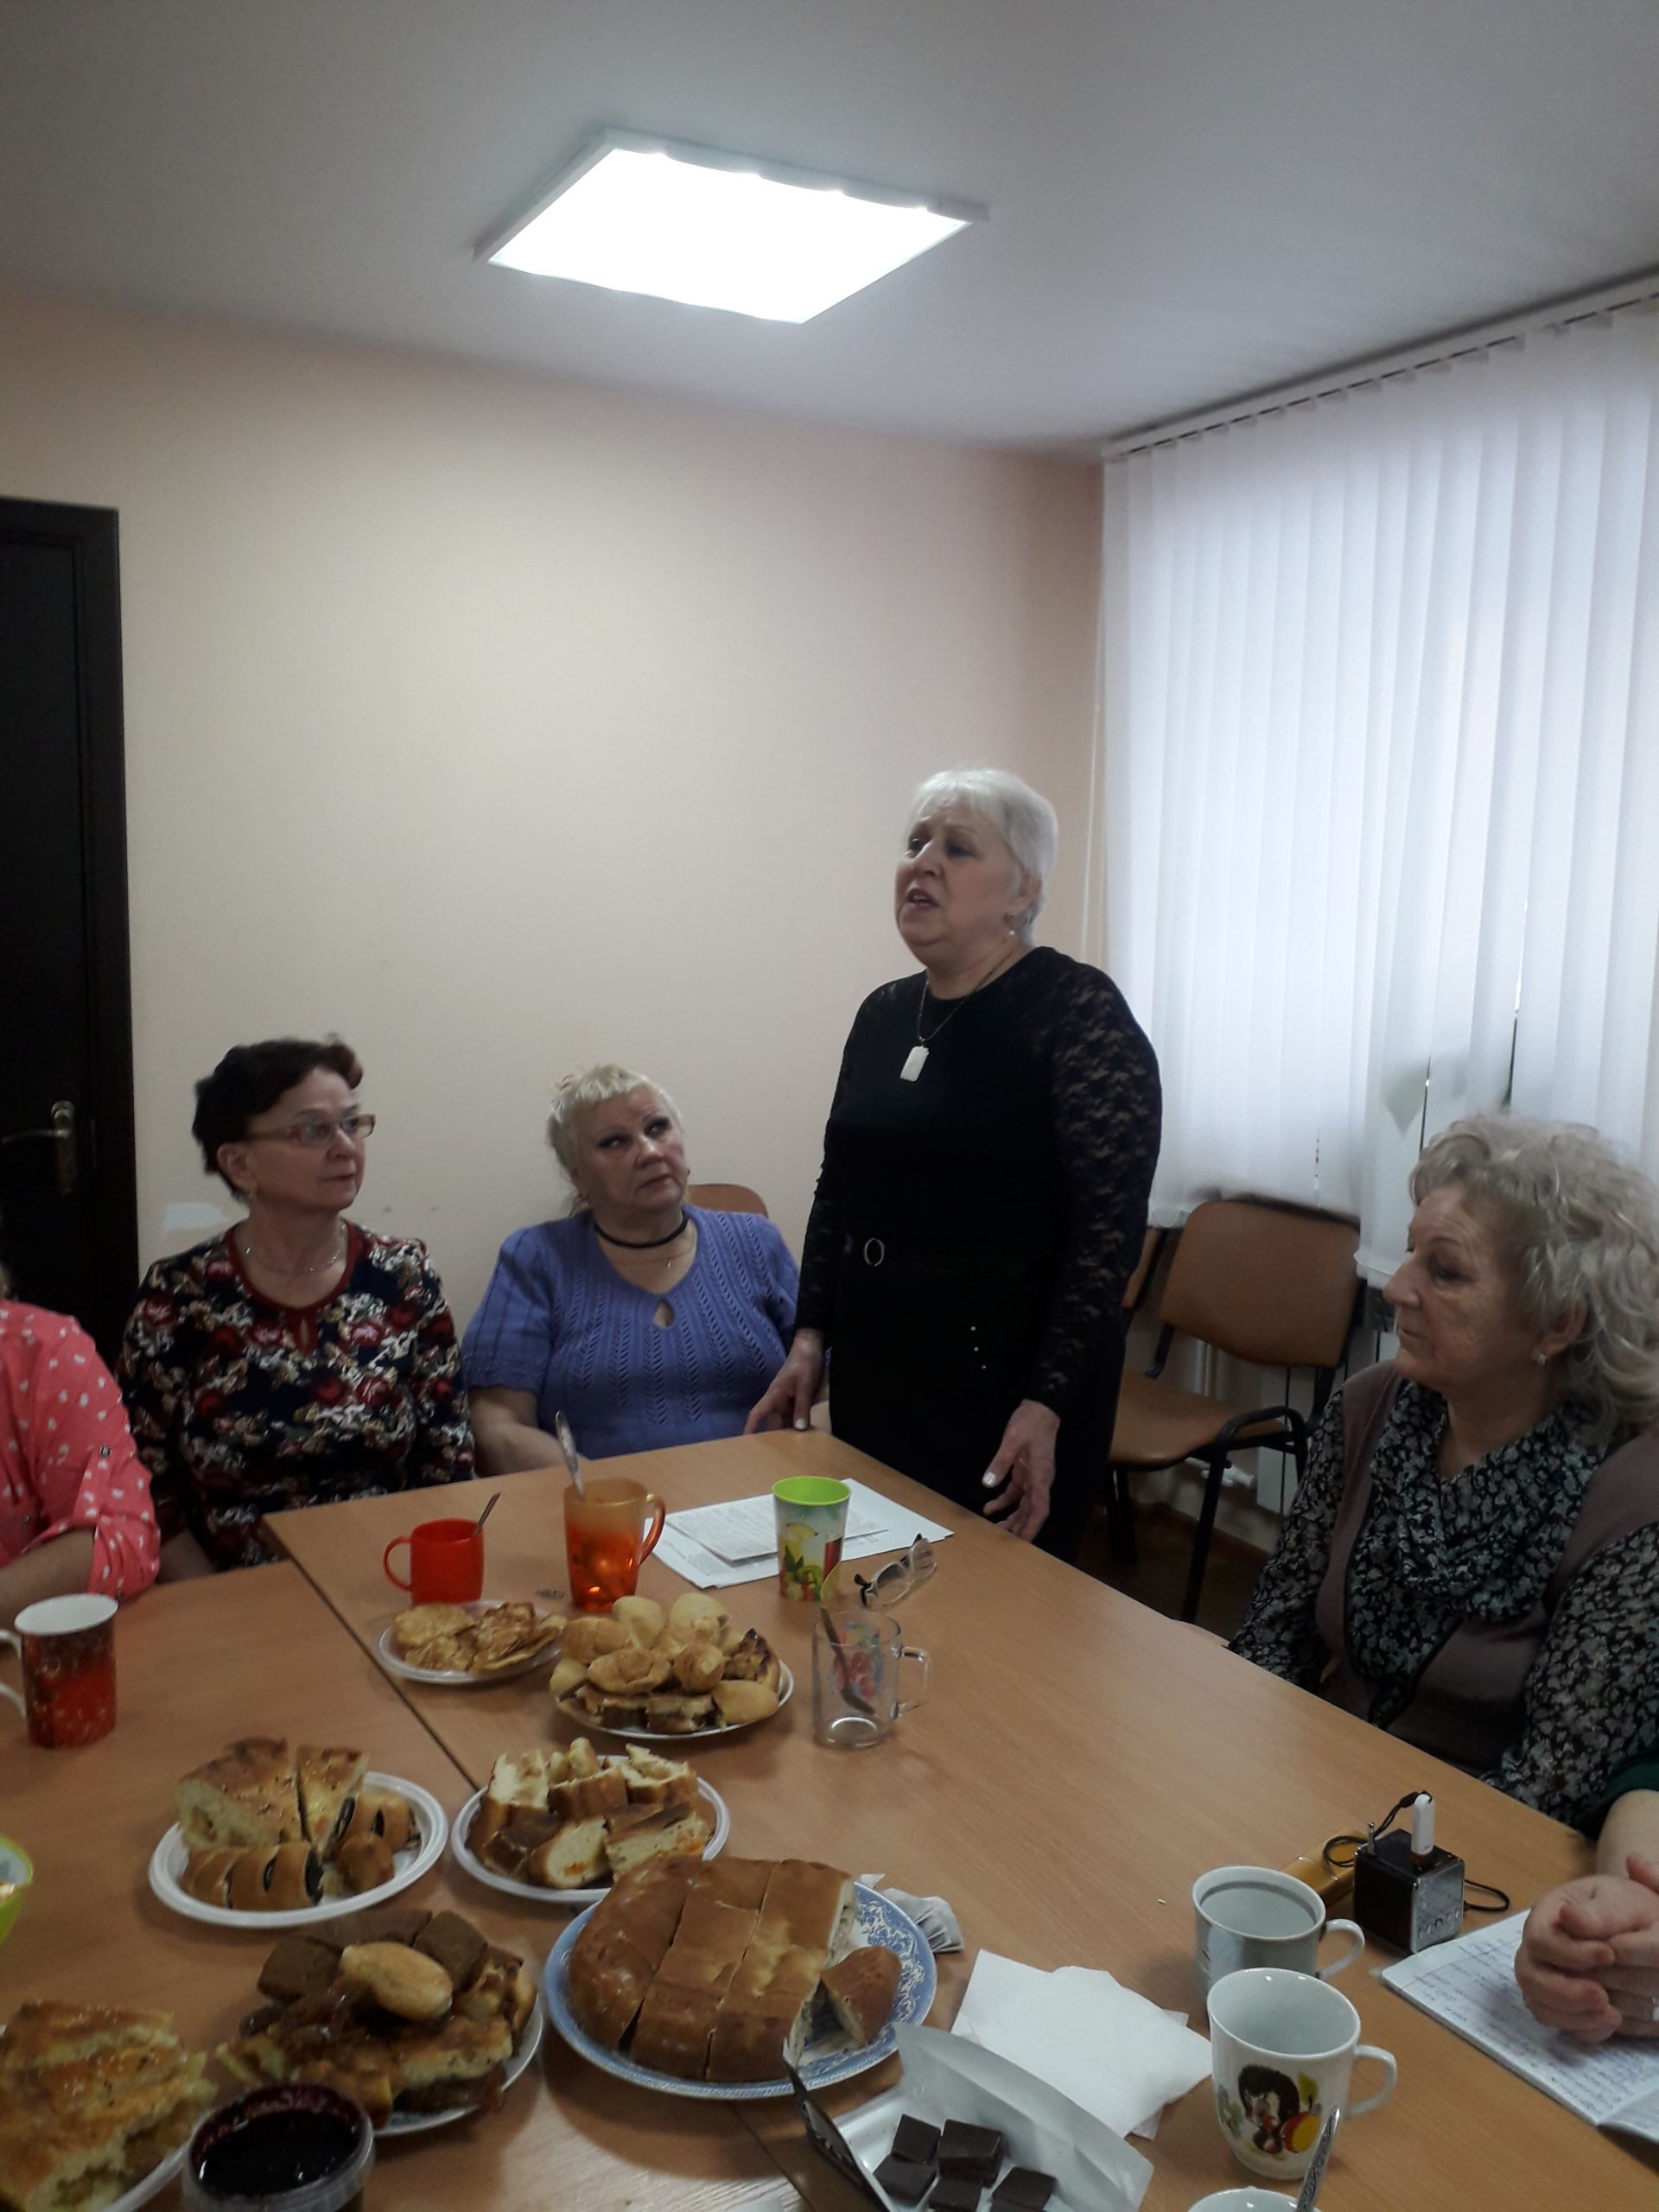 Праздник, посвященный Дню матери, прошел в женском клубе Менделеевска